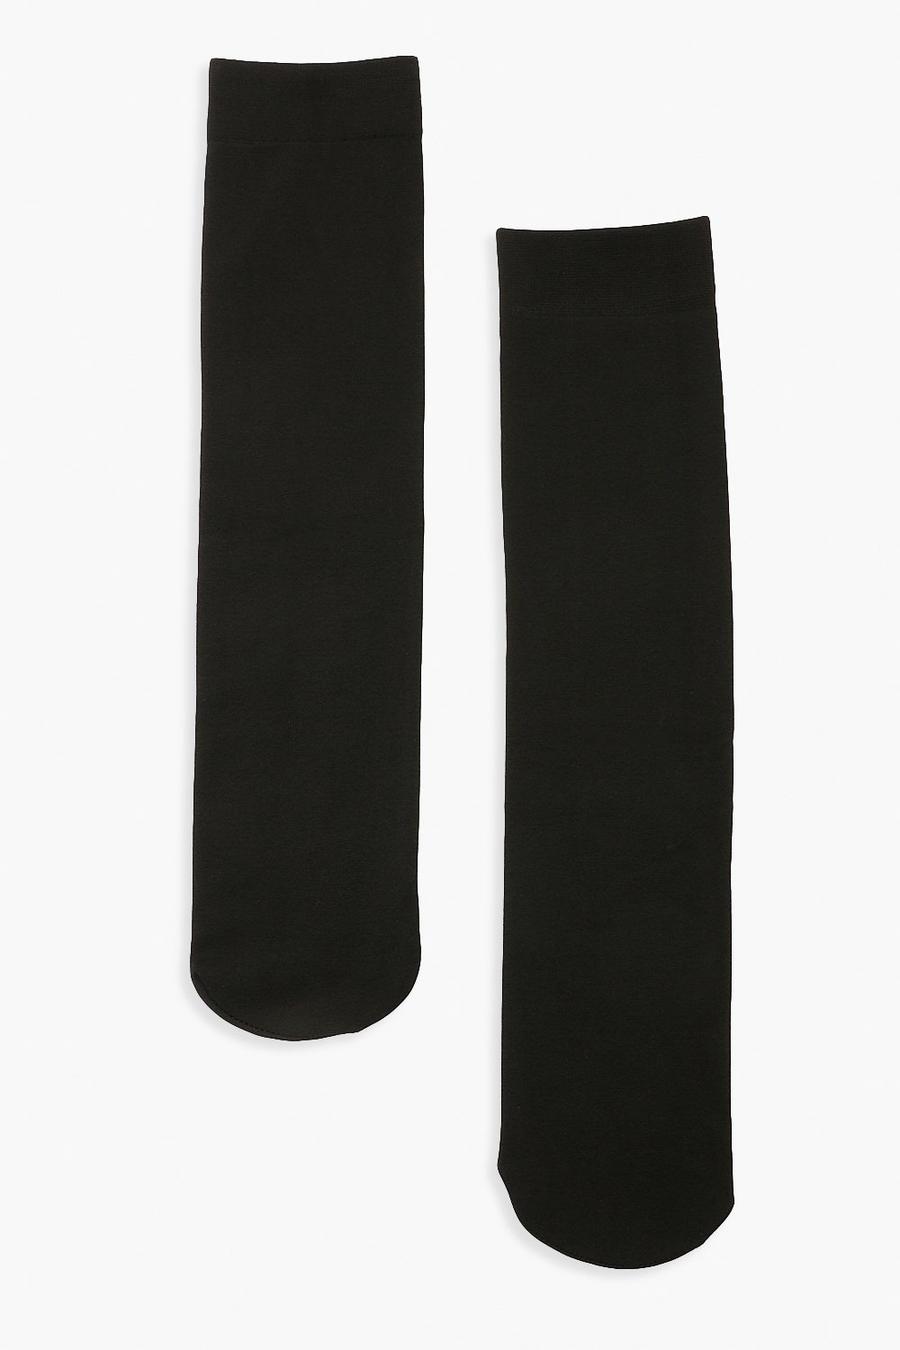 זוג בודד של גרבי ברך תרמיים בצבע שחור